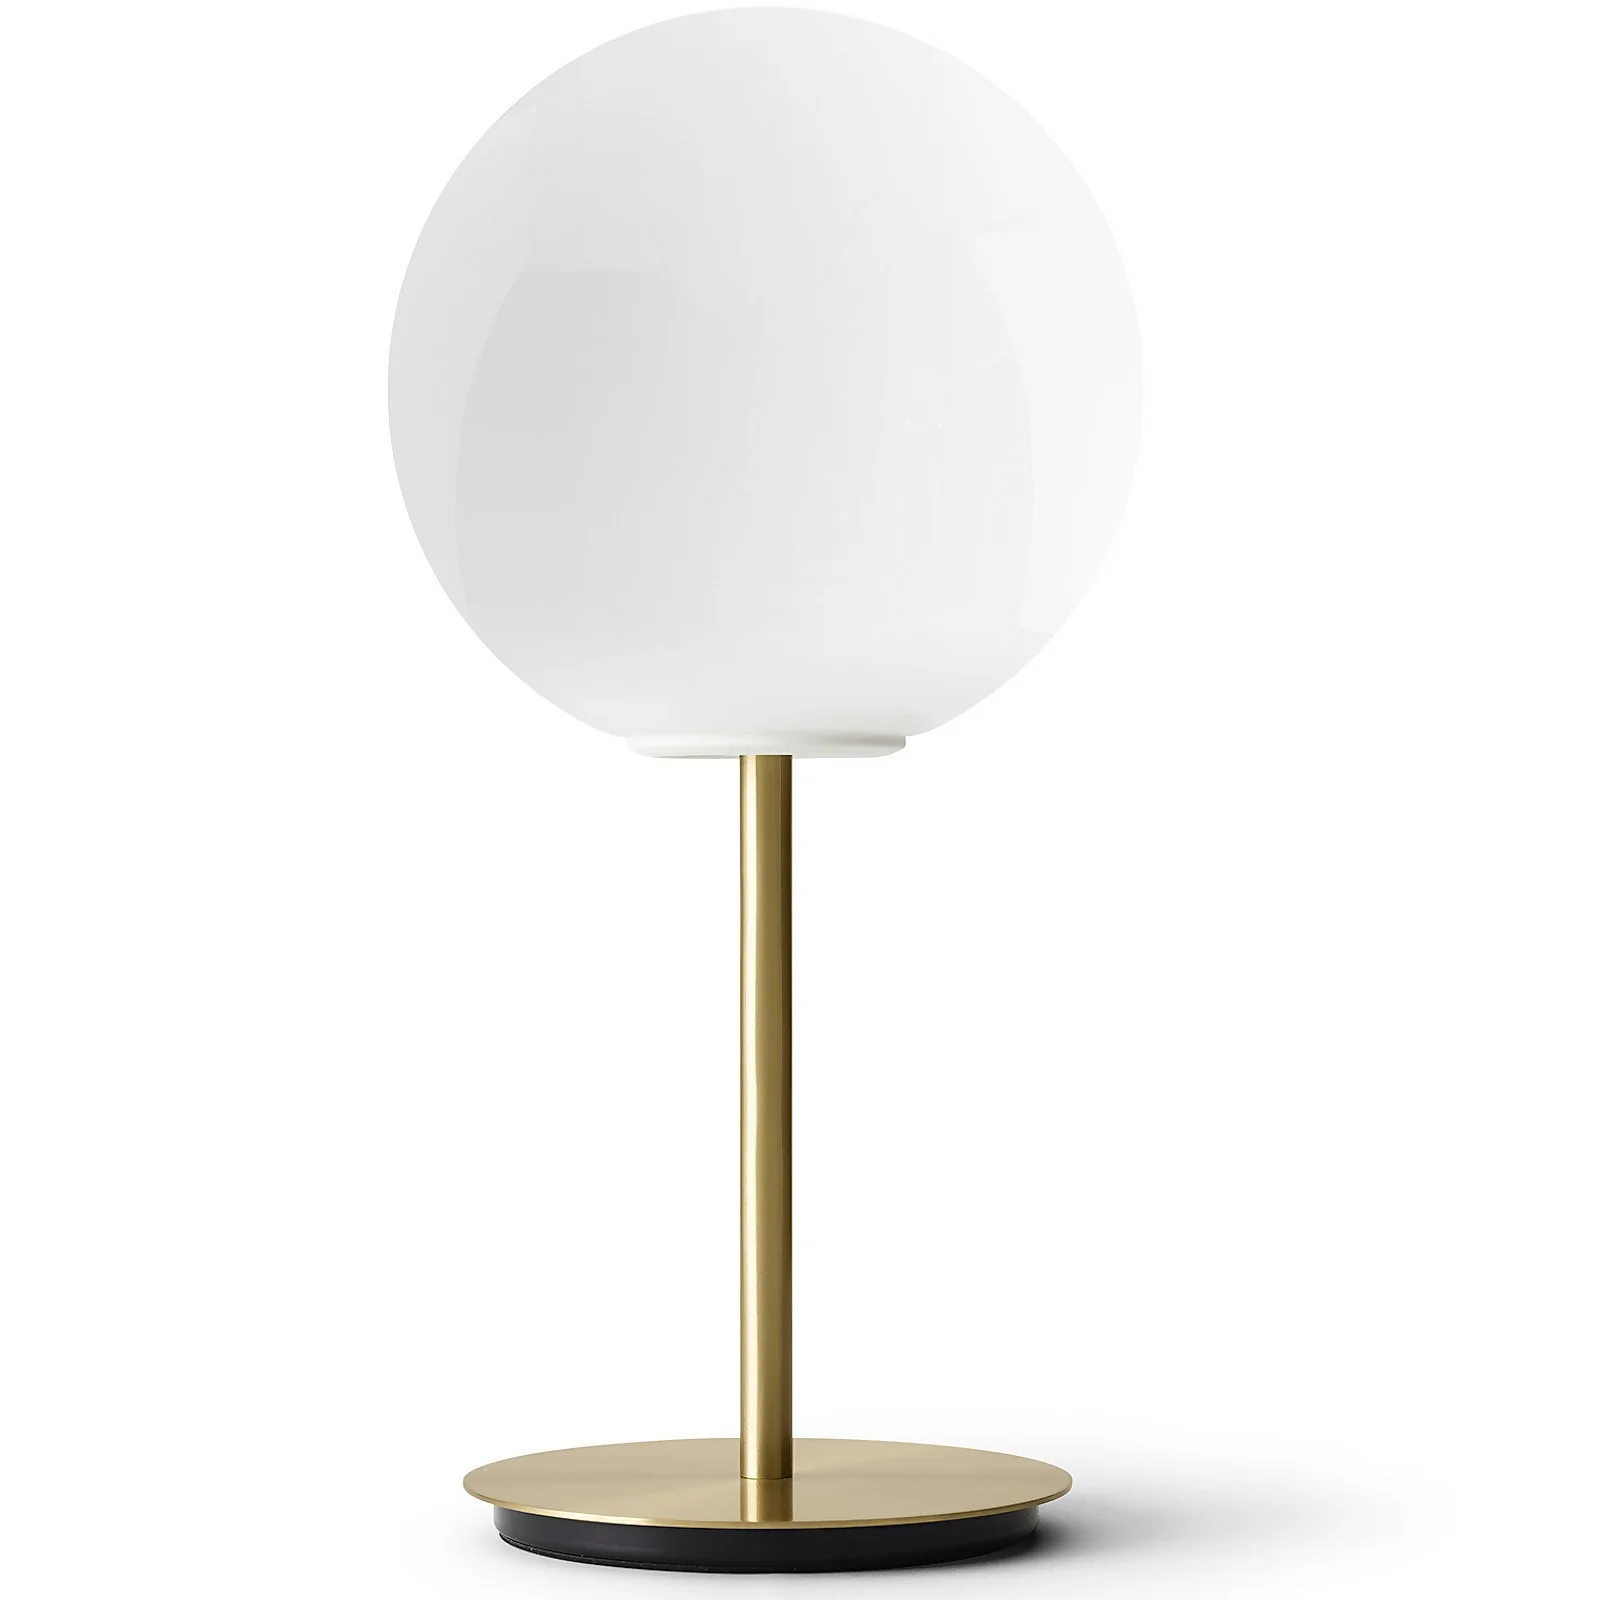 Audo Shiny Opal Table Lamp - Brushed Brass Image 1